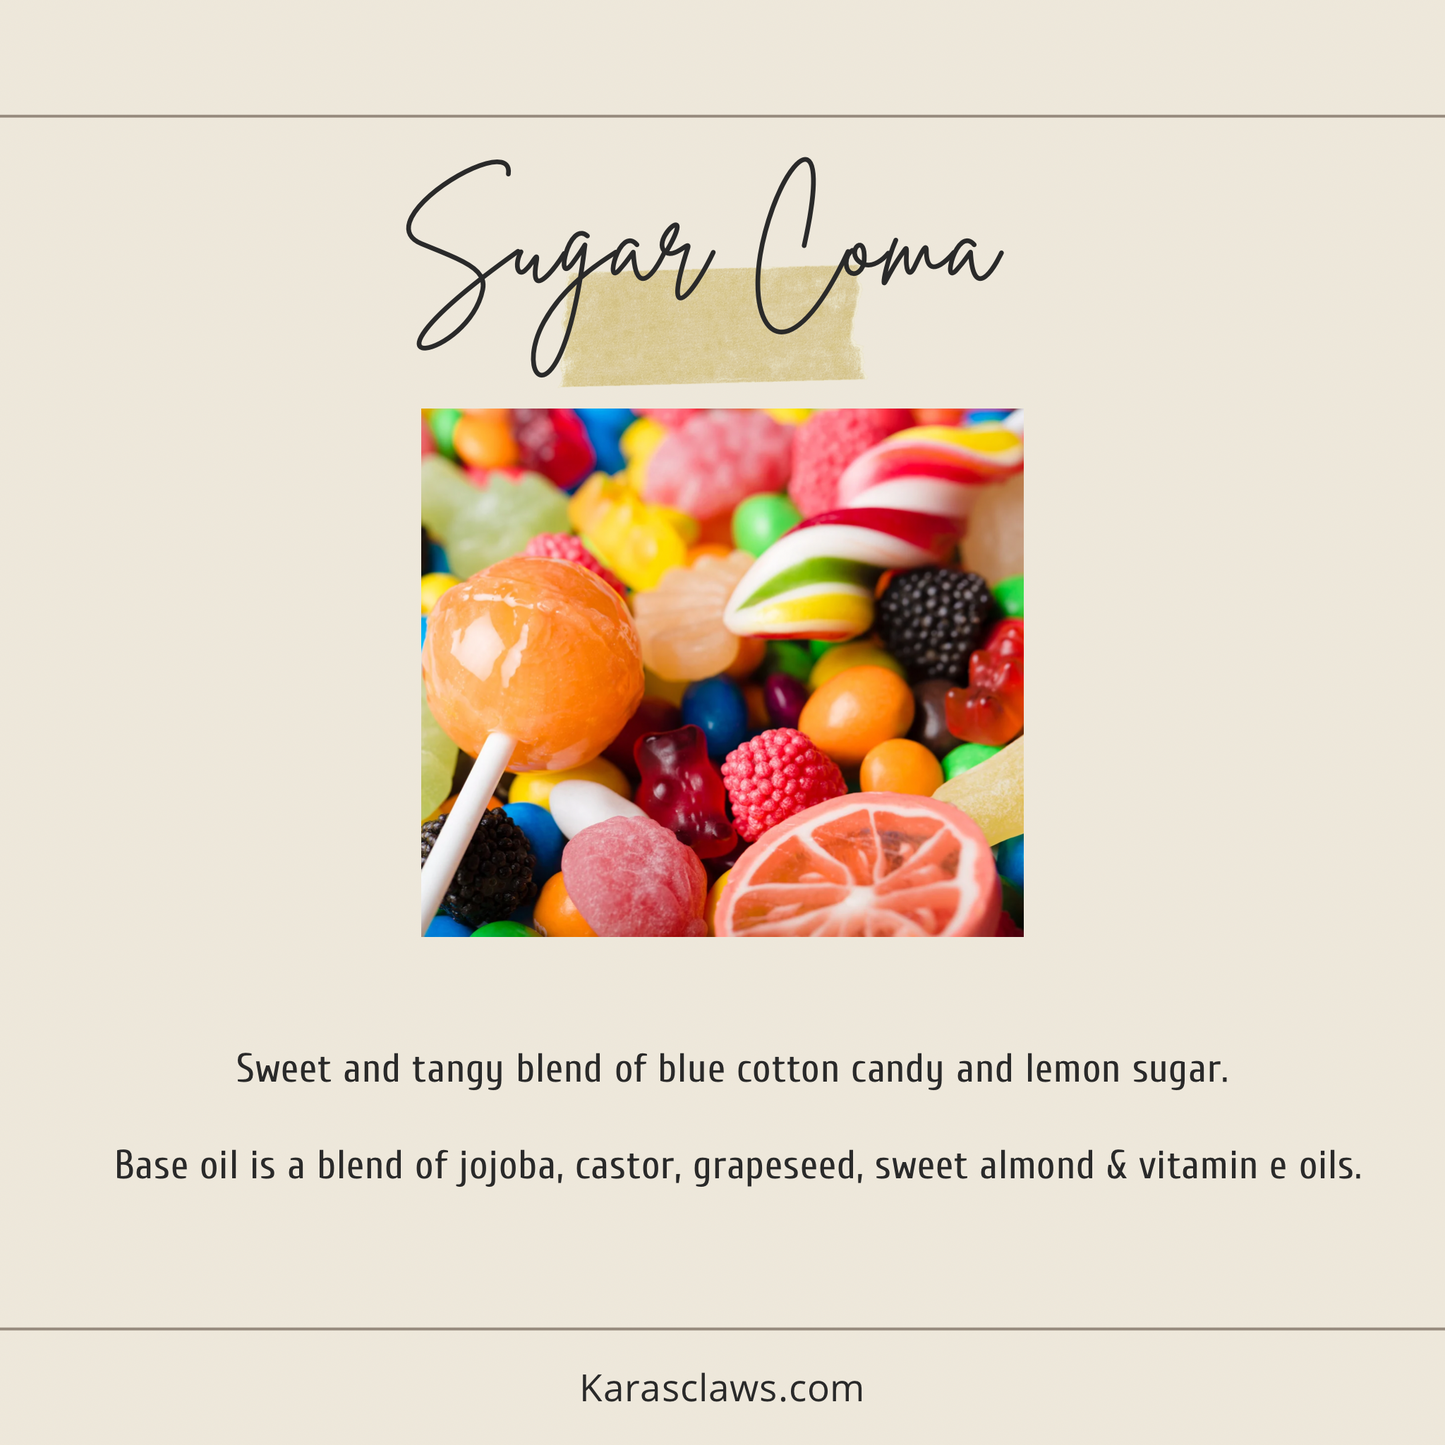 Sugar Coma